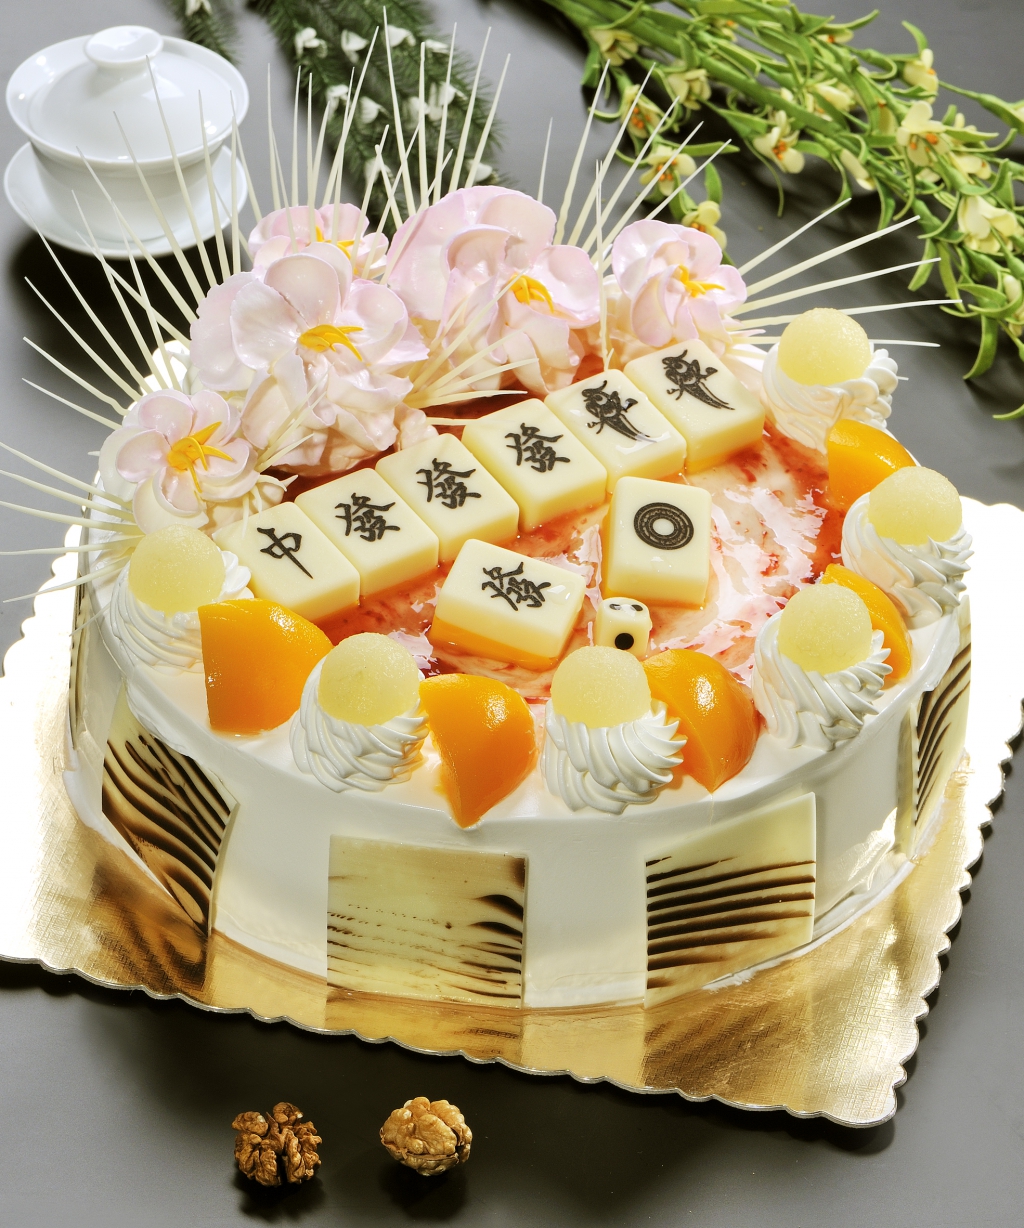 麻将生日蛋糕怎么做_麻将生日蛋糕的做法_豆果美食